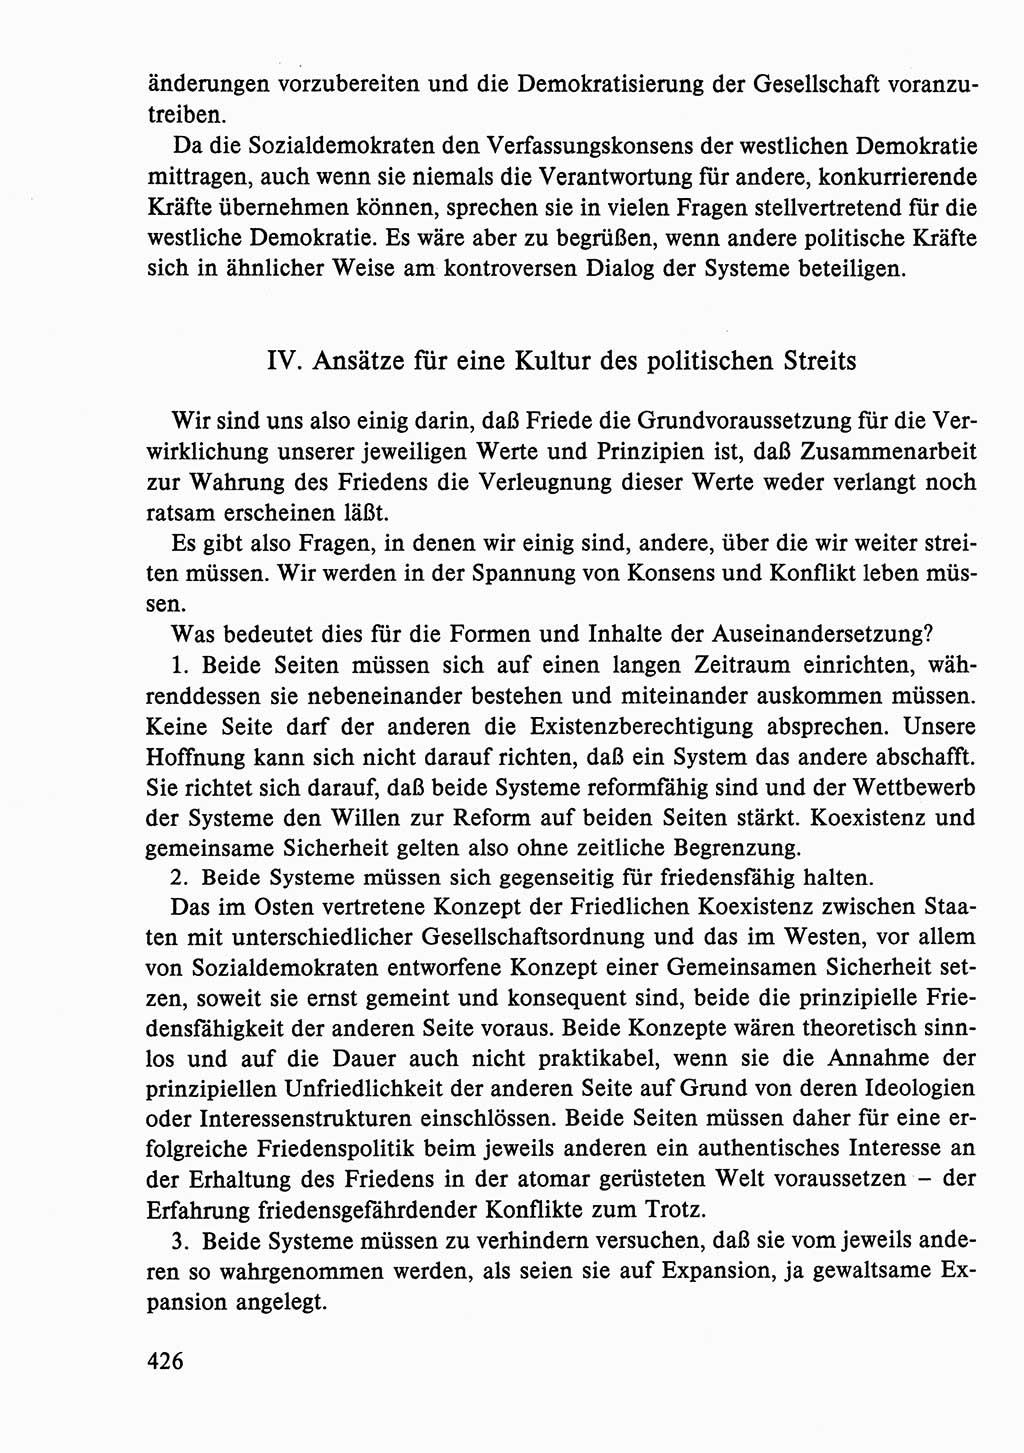 Dokumente der Sozialistischen Einheitspartei Deutschlands (SED) [Deutsche Demokratische Republik (DDR)] 1986-1987, Seite 426 (Dok. SED DDR 1986-1987, S. 426)